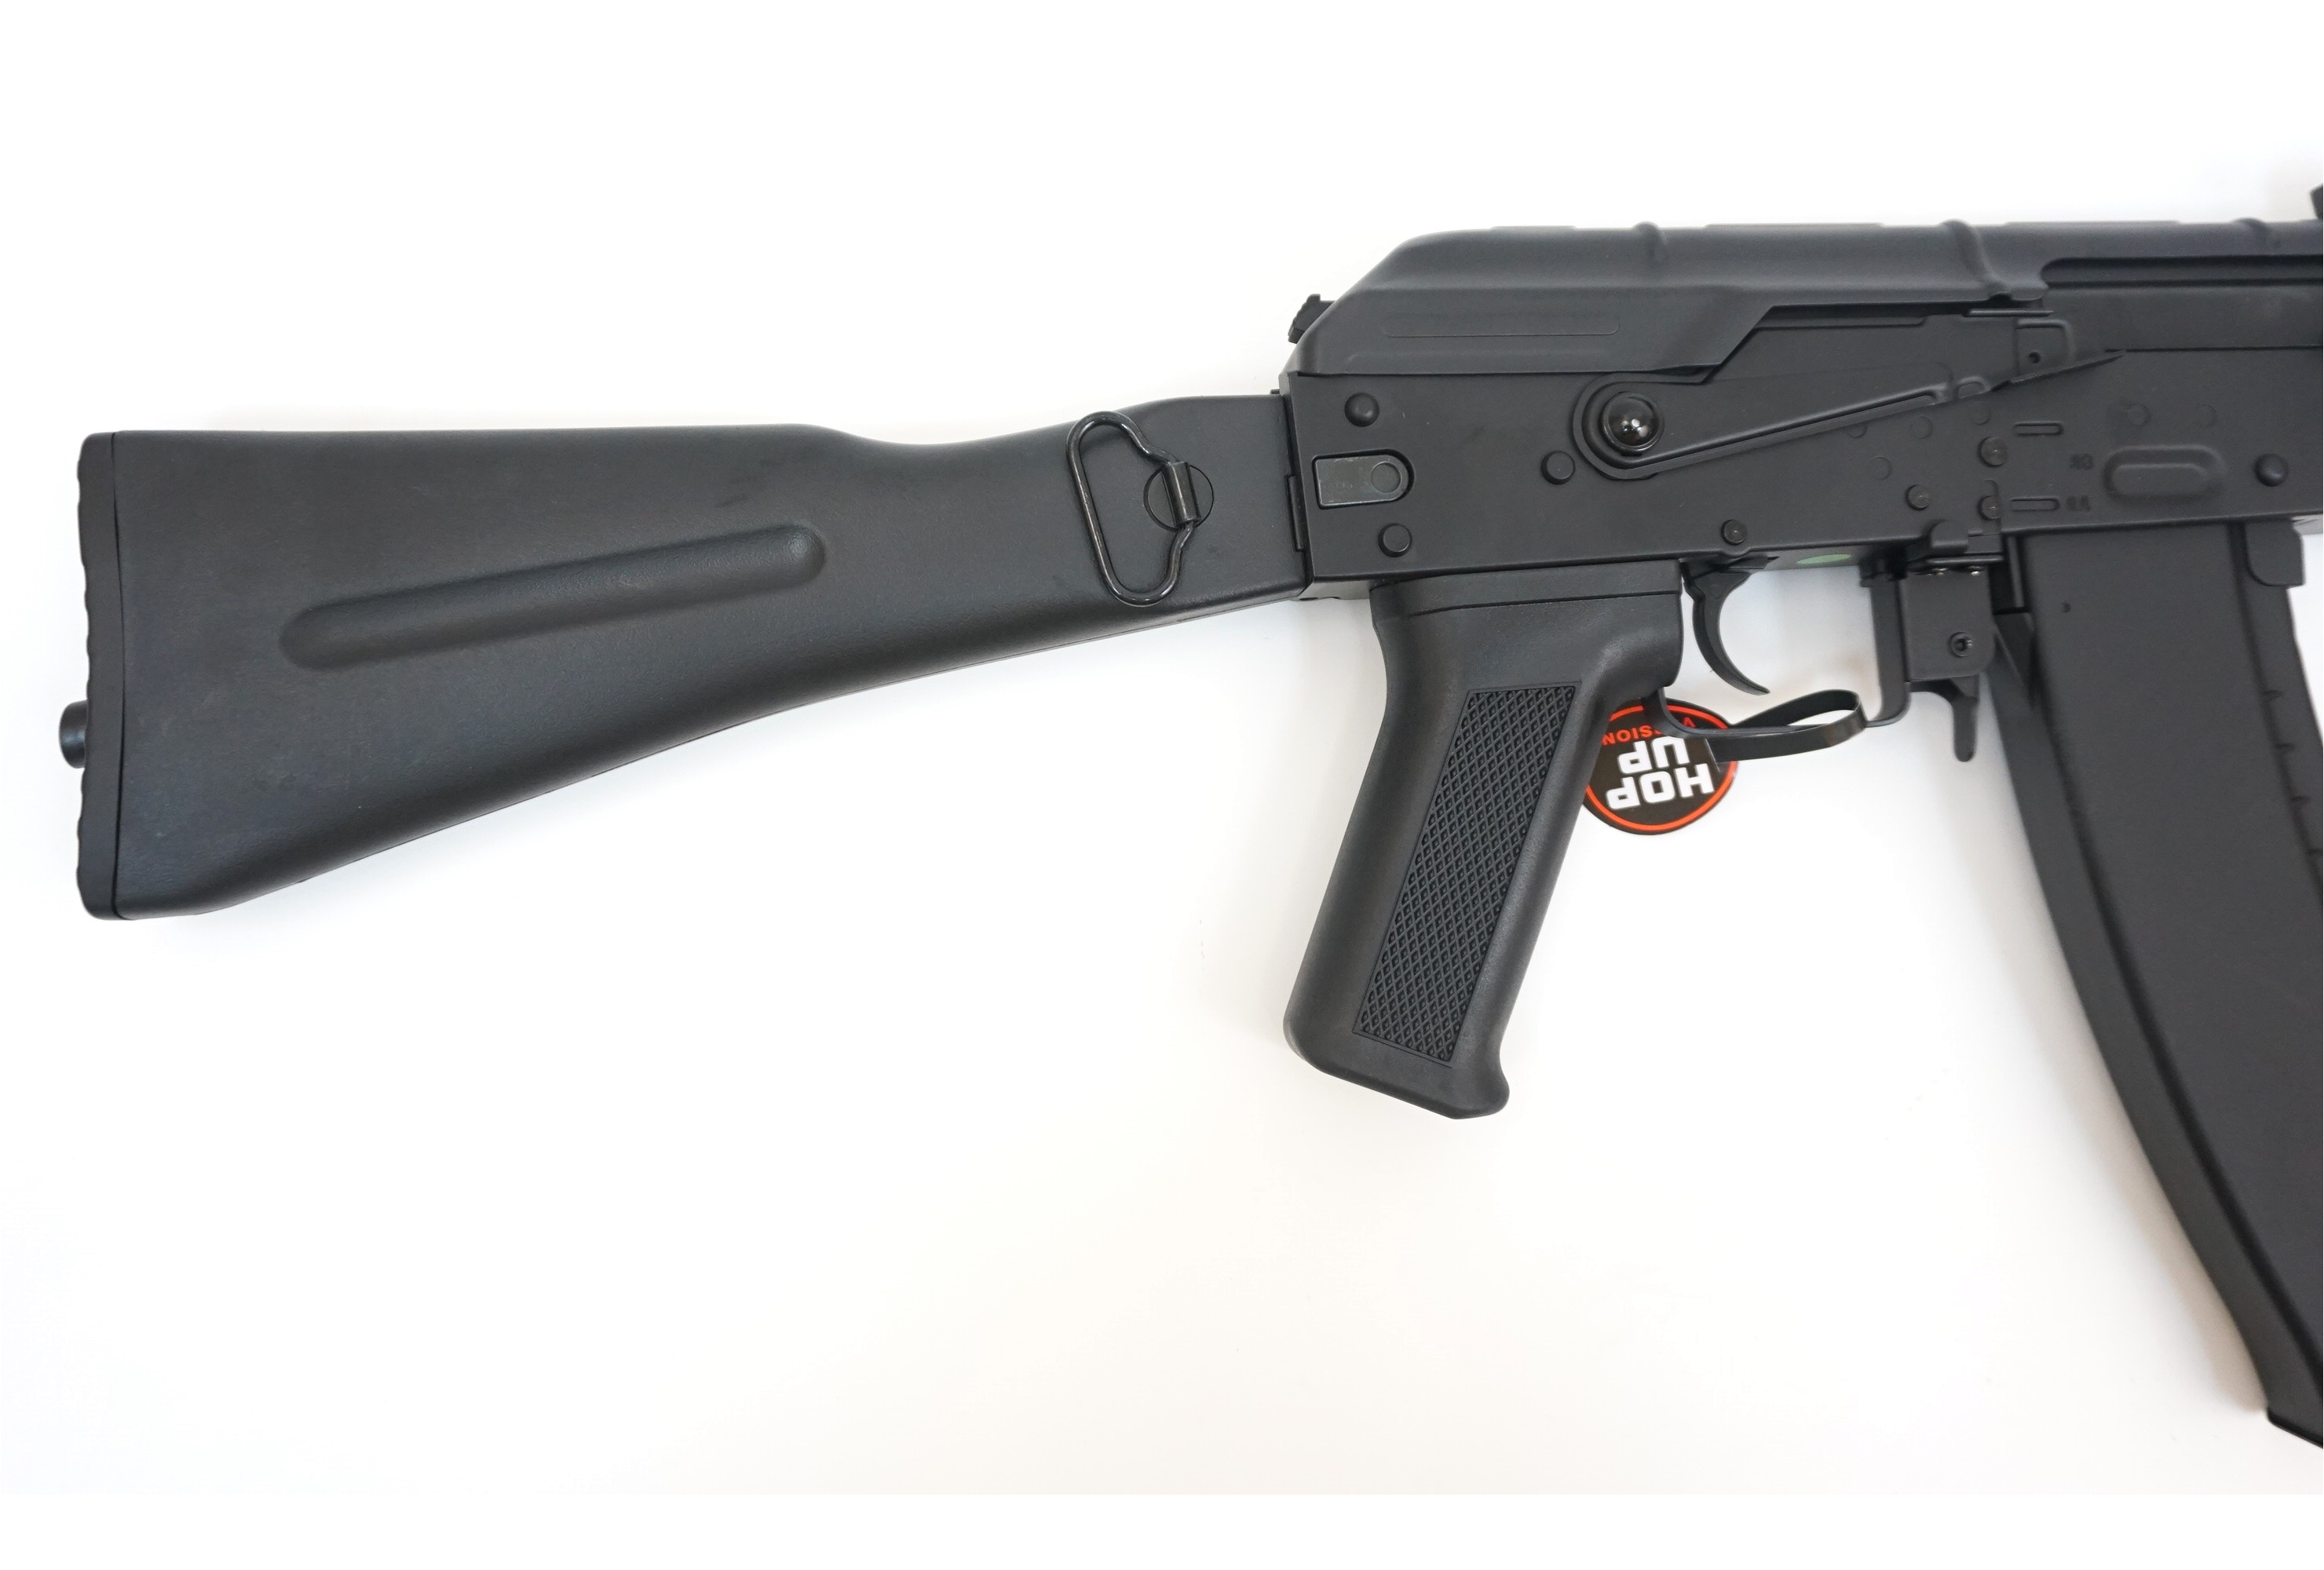 Автомат страйкбольный (Cyma) CM047C AK-74M (АК-74М) металл/пластик